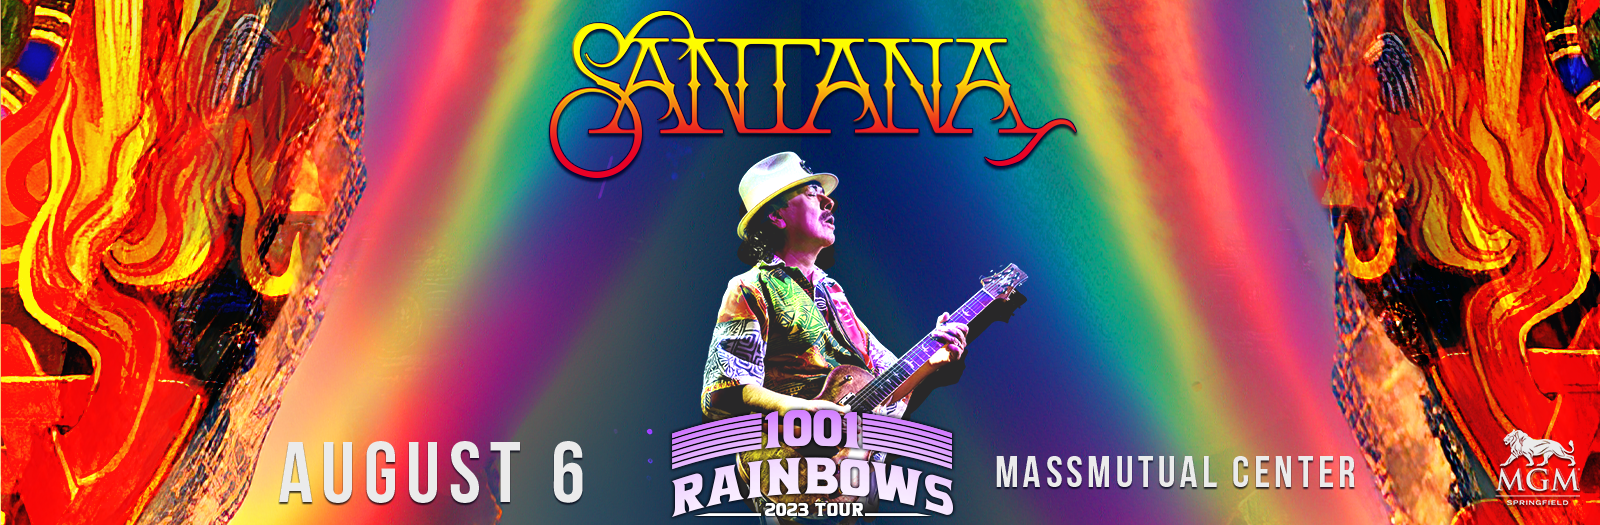 santana rainbow tour